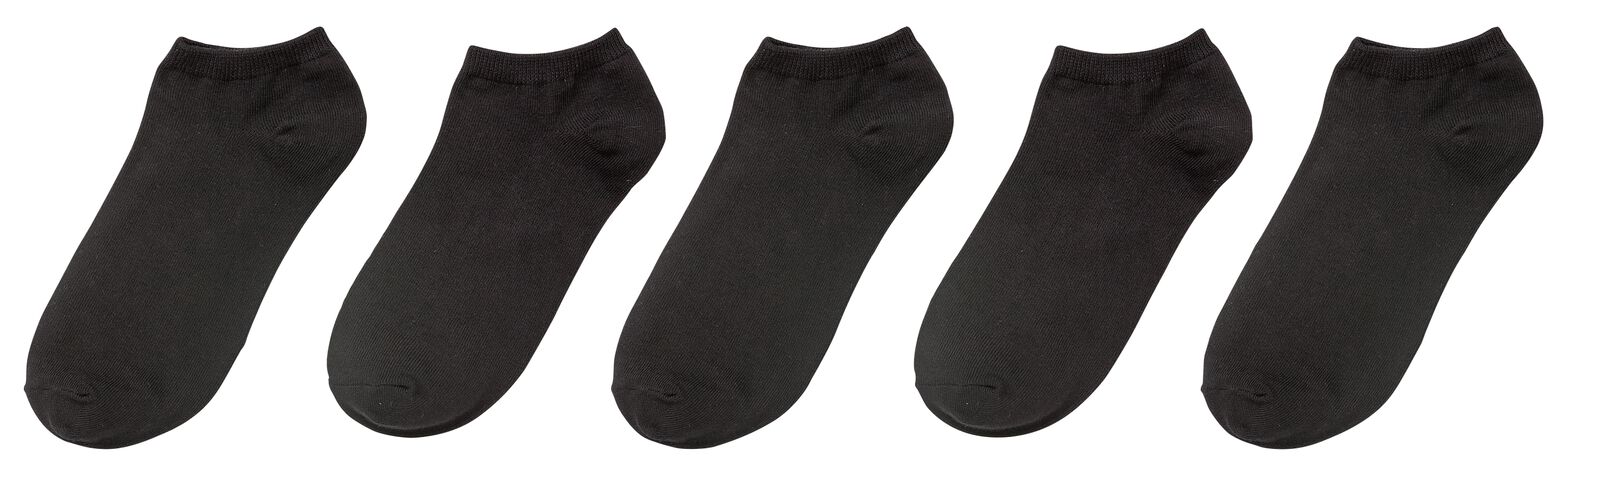 5 paires de socquettes pour sneakers homme noir - HEMA